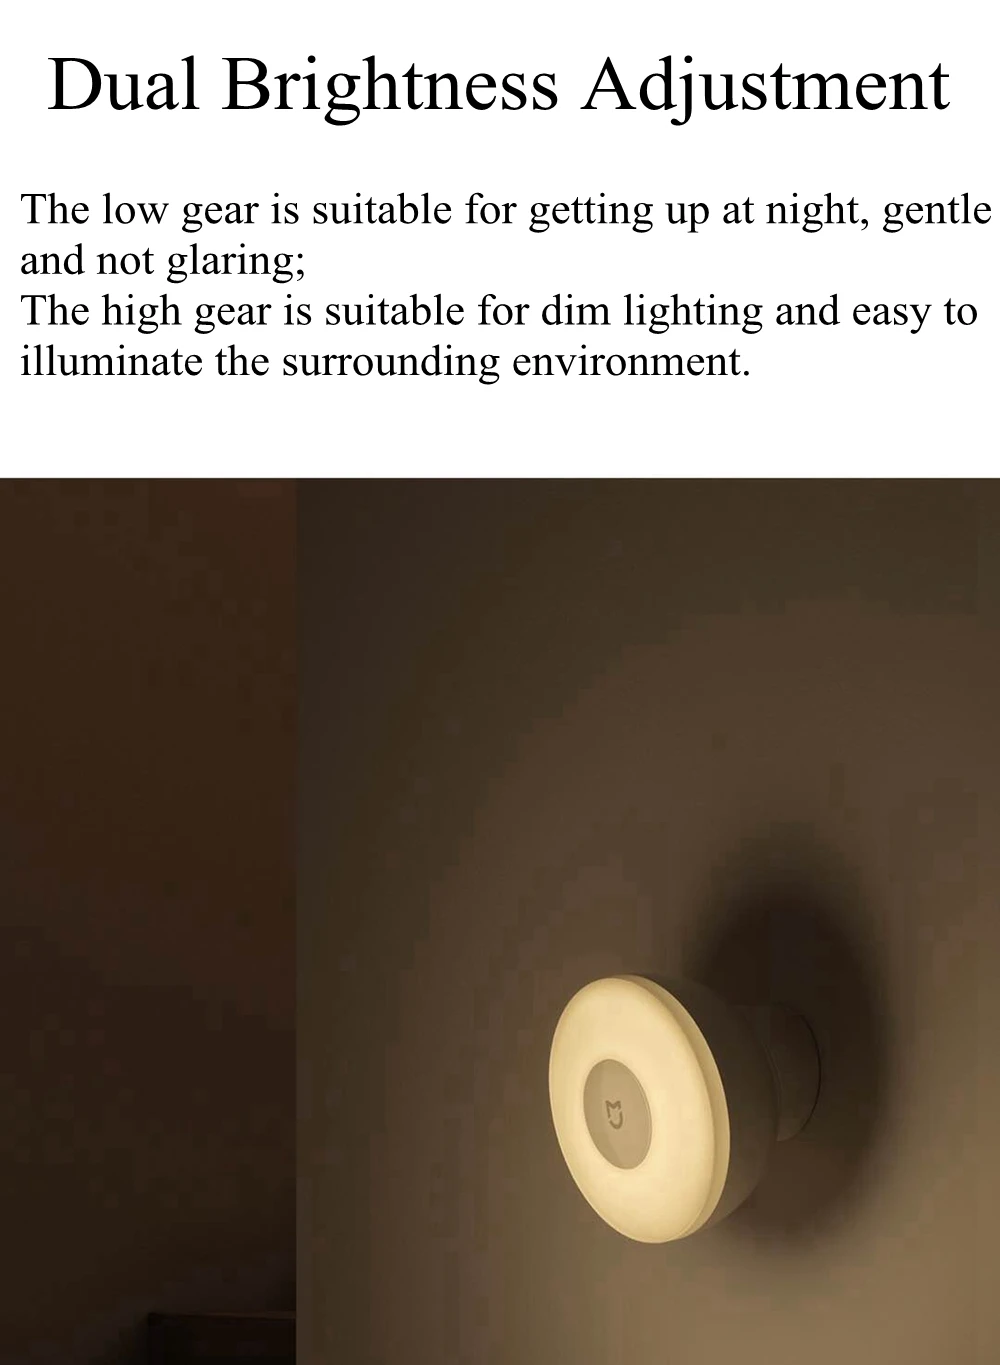 Xiaomi Mijia светодиодный умный датчик движения ночник 2 AA батарея питание Индукционная лампа для шкафа ЛЕСТНИЦЫ шкаф коридор